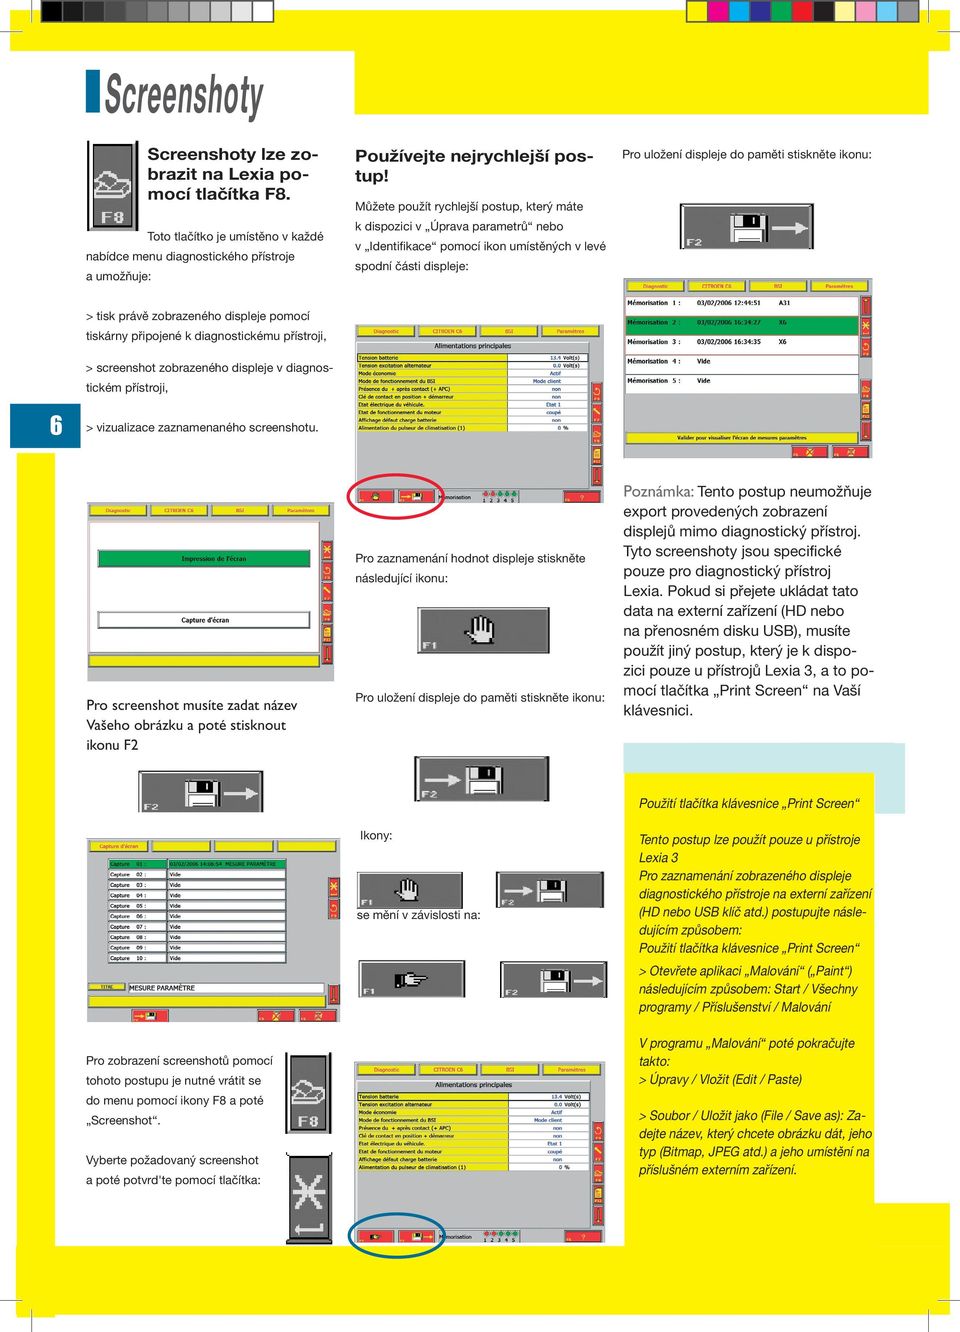 tisk právě zobrazeného displeje pomocí tiskárny připojené k diagnostickému přístroji, > screenshot zobrazeného displeje v diagnostickém přístroji, > vizualizace zaznamenaného screenshotu.